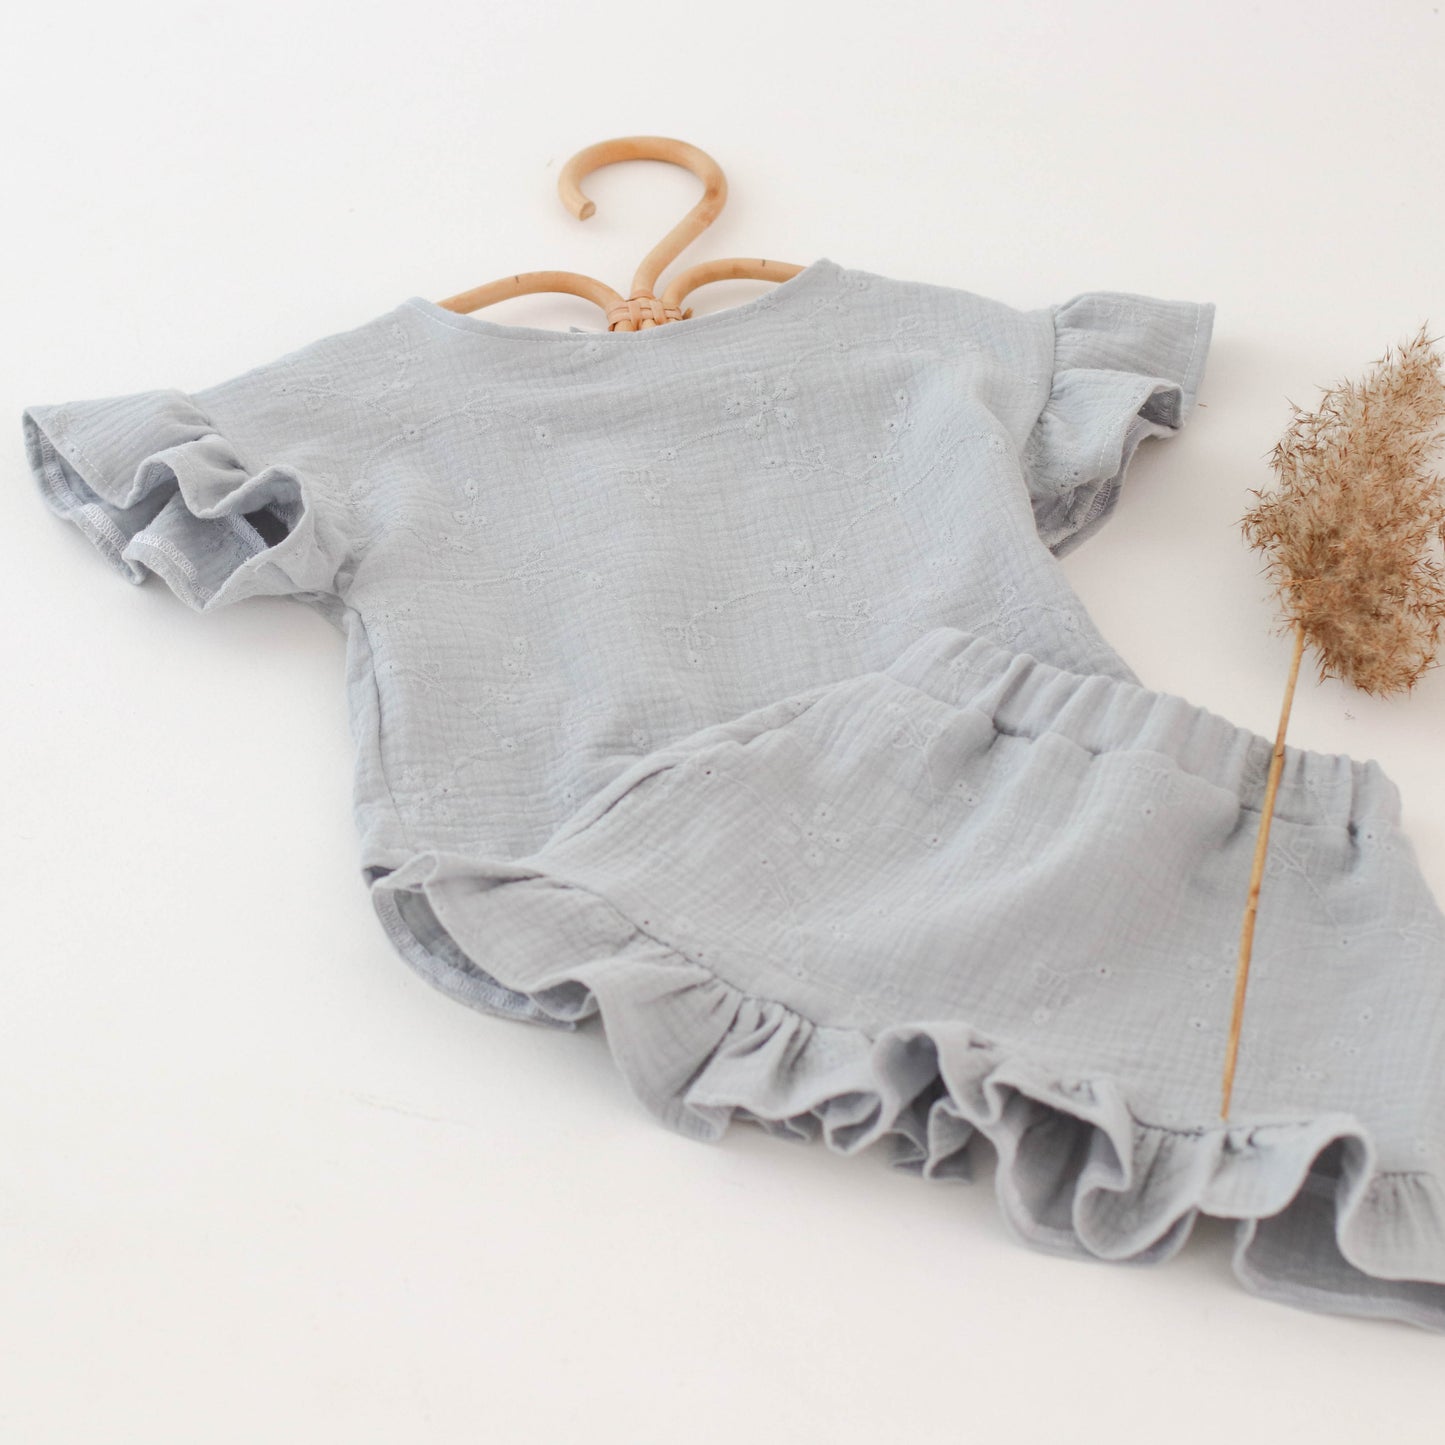 Embroidered muslin skirt